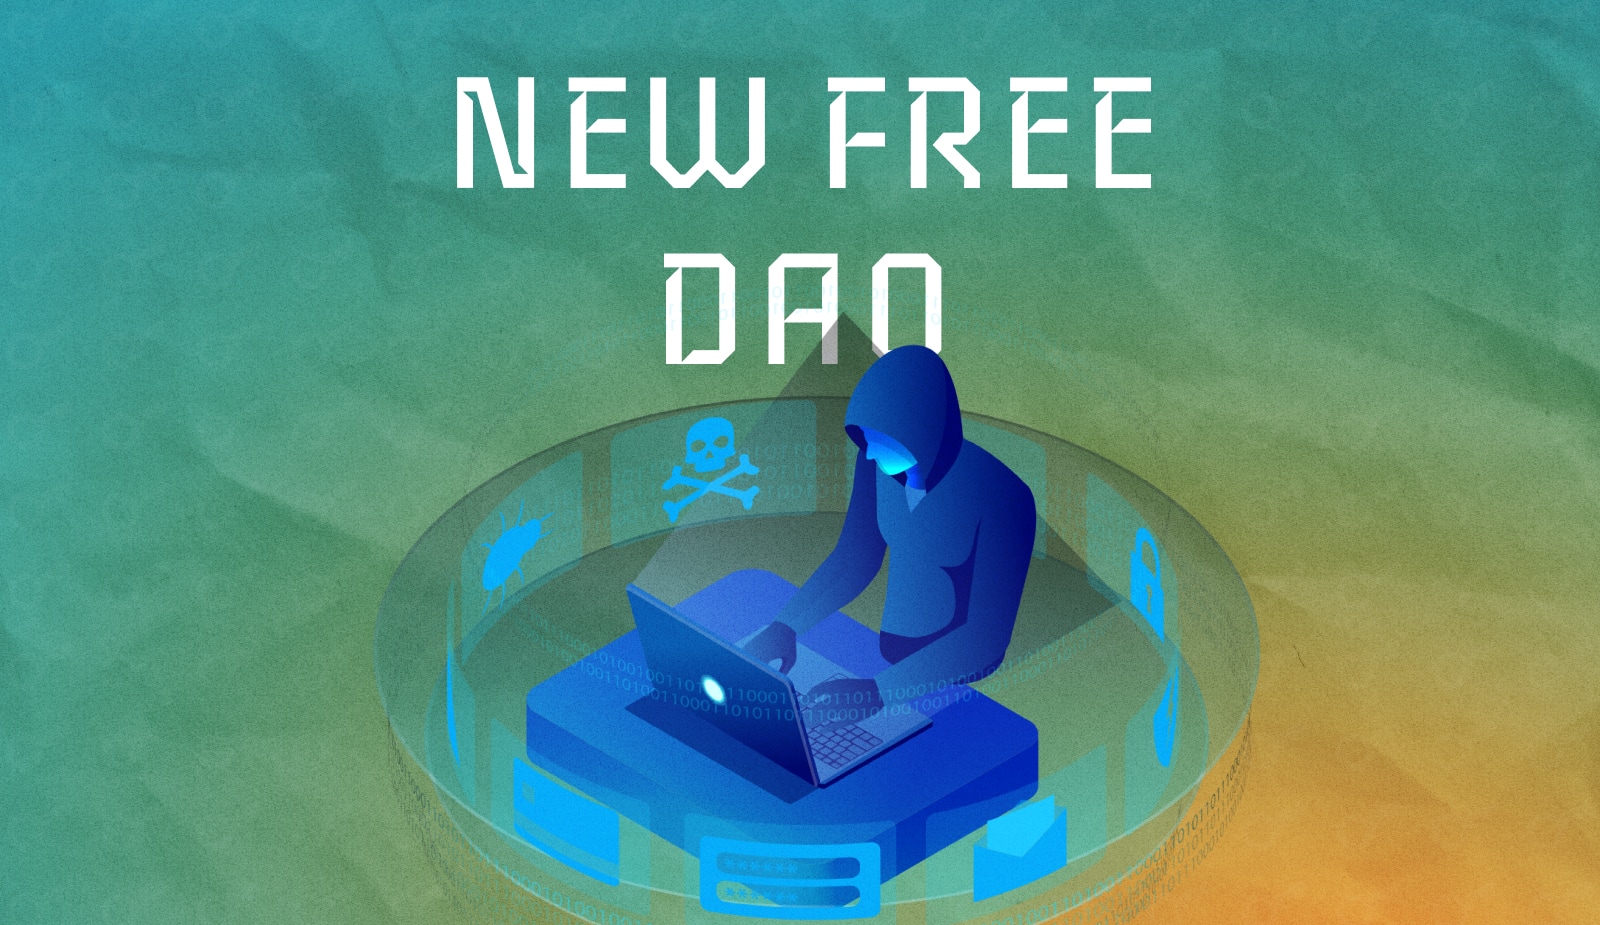 Протокол New Free DAO был взломан. Цена нативного токена платформы упала на 99%. Заглавный коллаж новости.